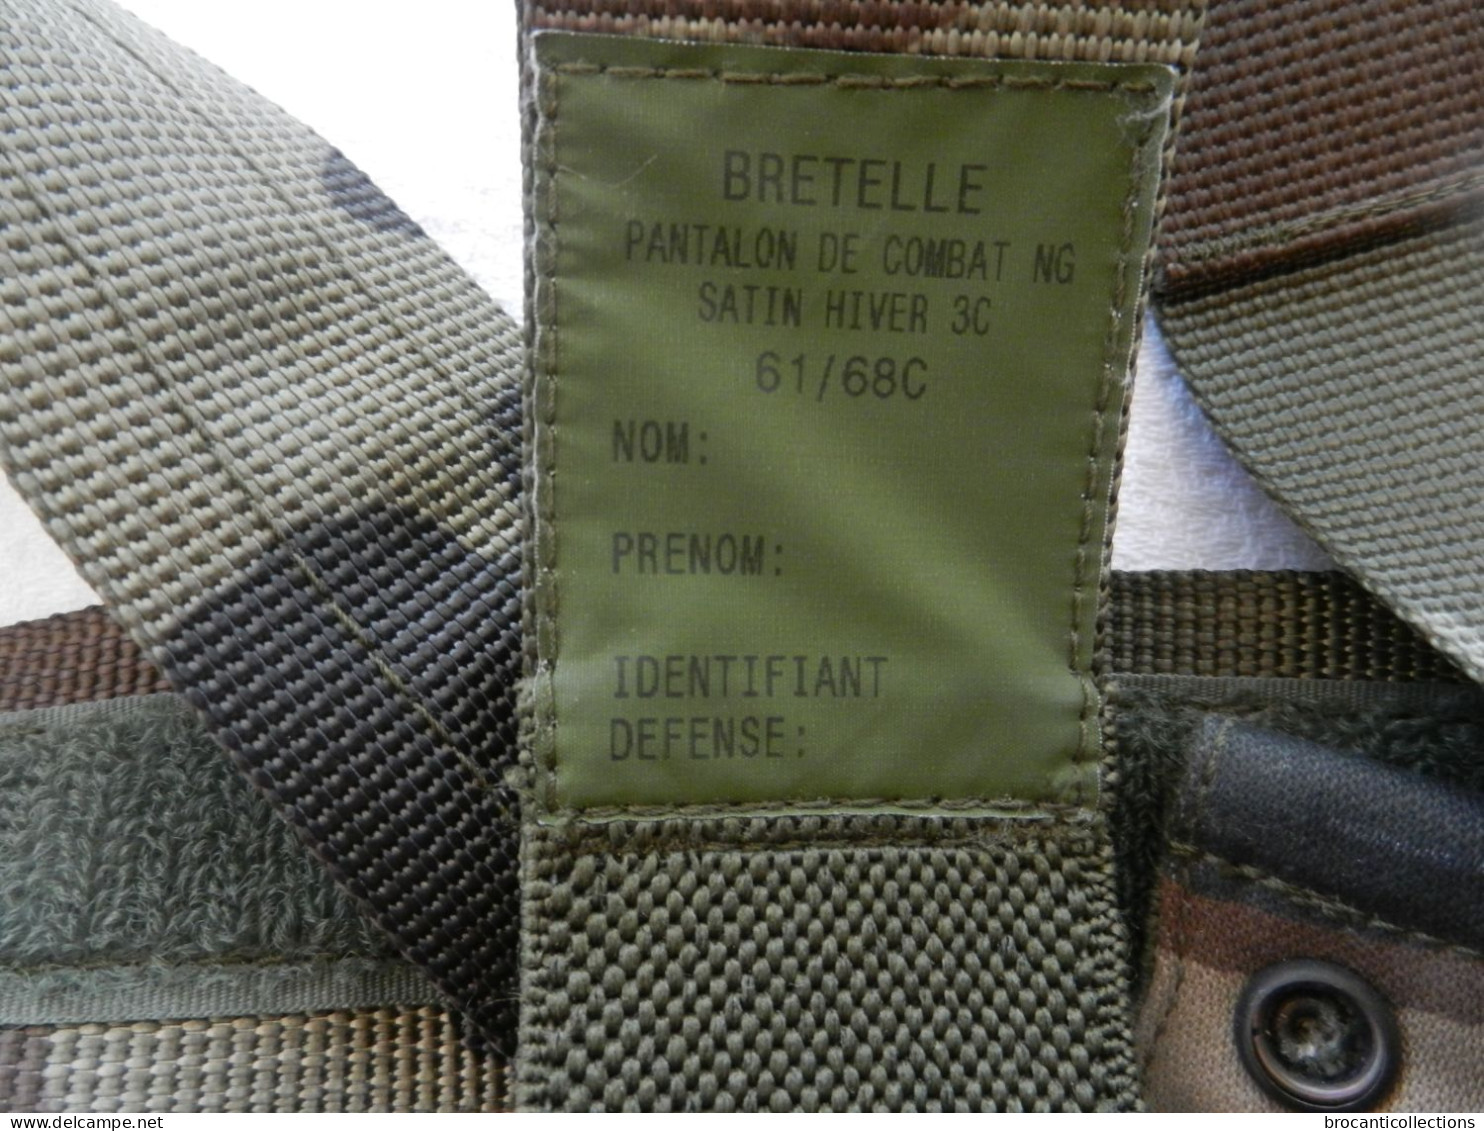 Bretelle Militaire Française Multifonctions Pour Arme - Musette Etc. - Equipement